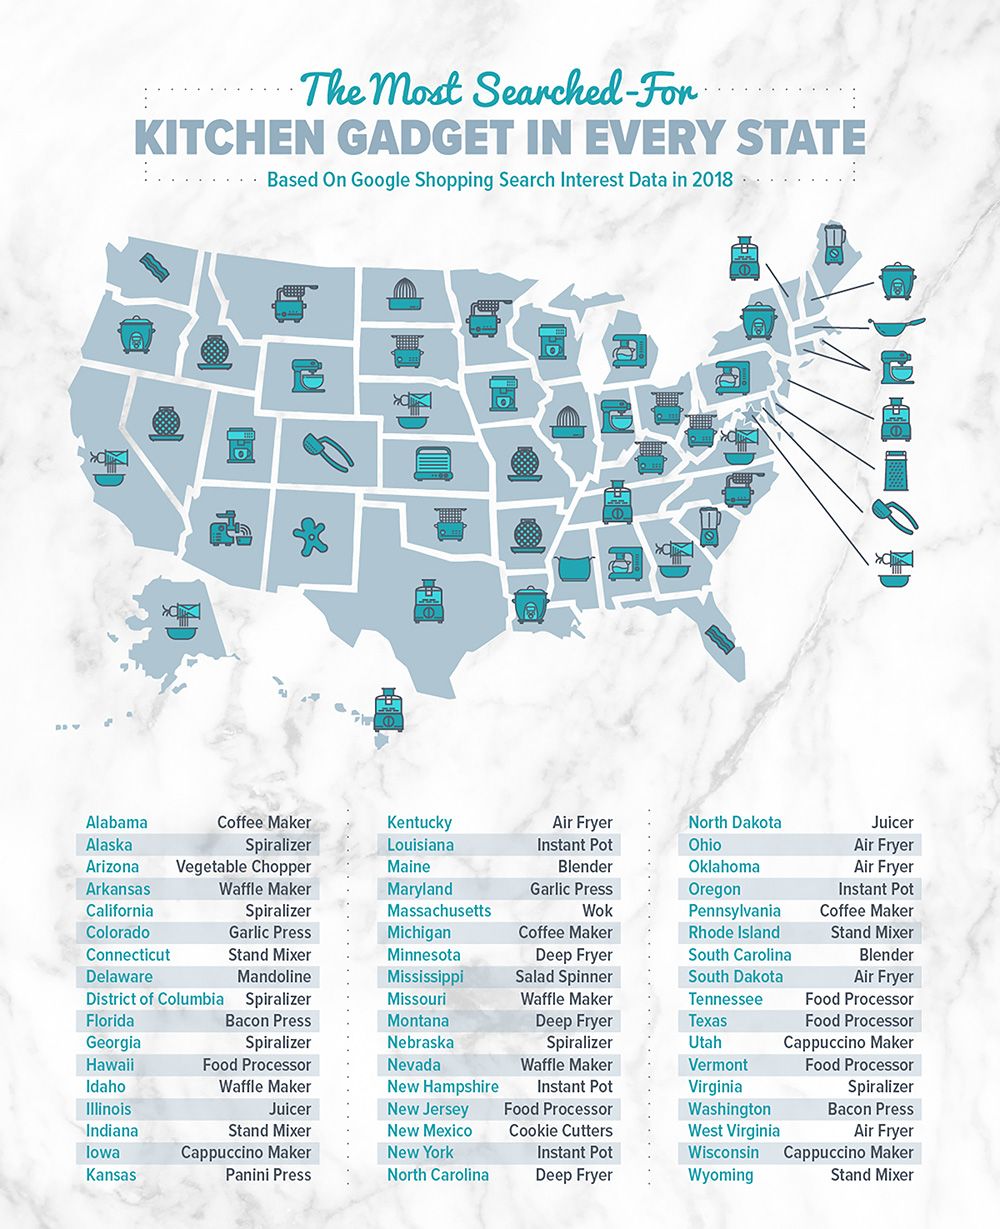 Den mest populära köksgadgeten i din stat, enligt Google